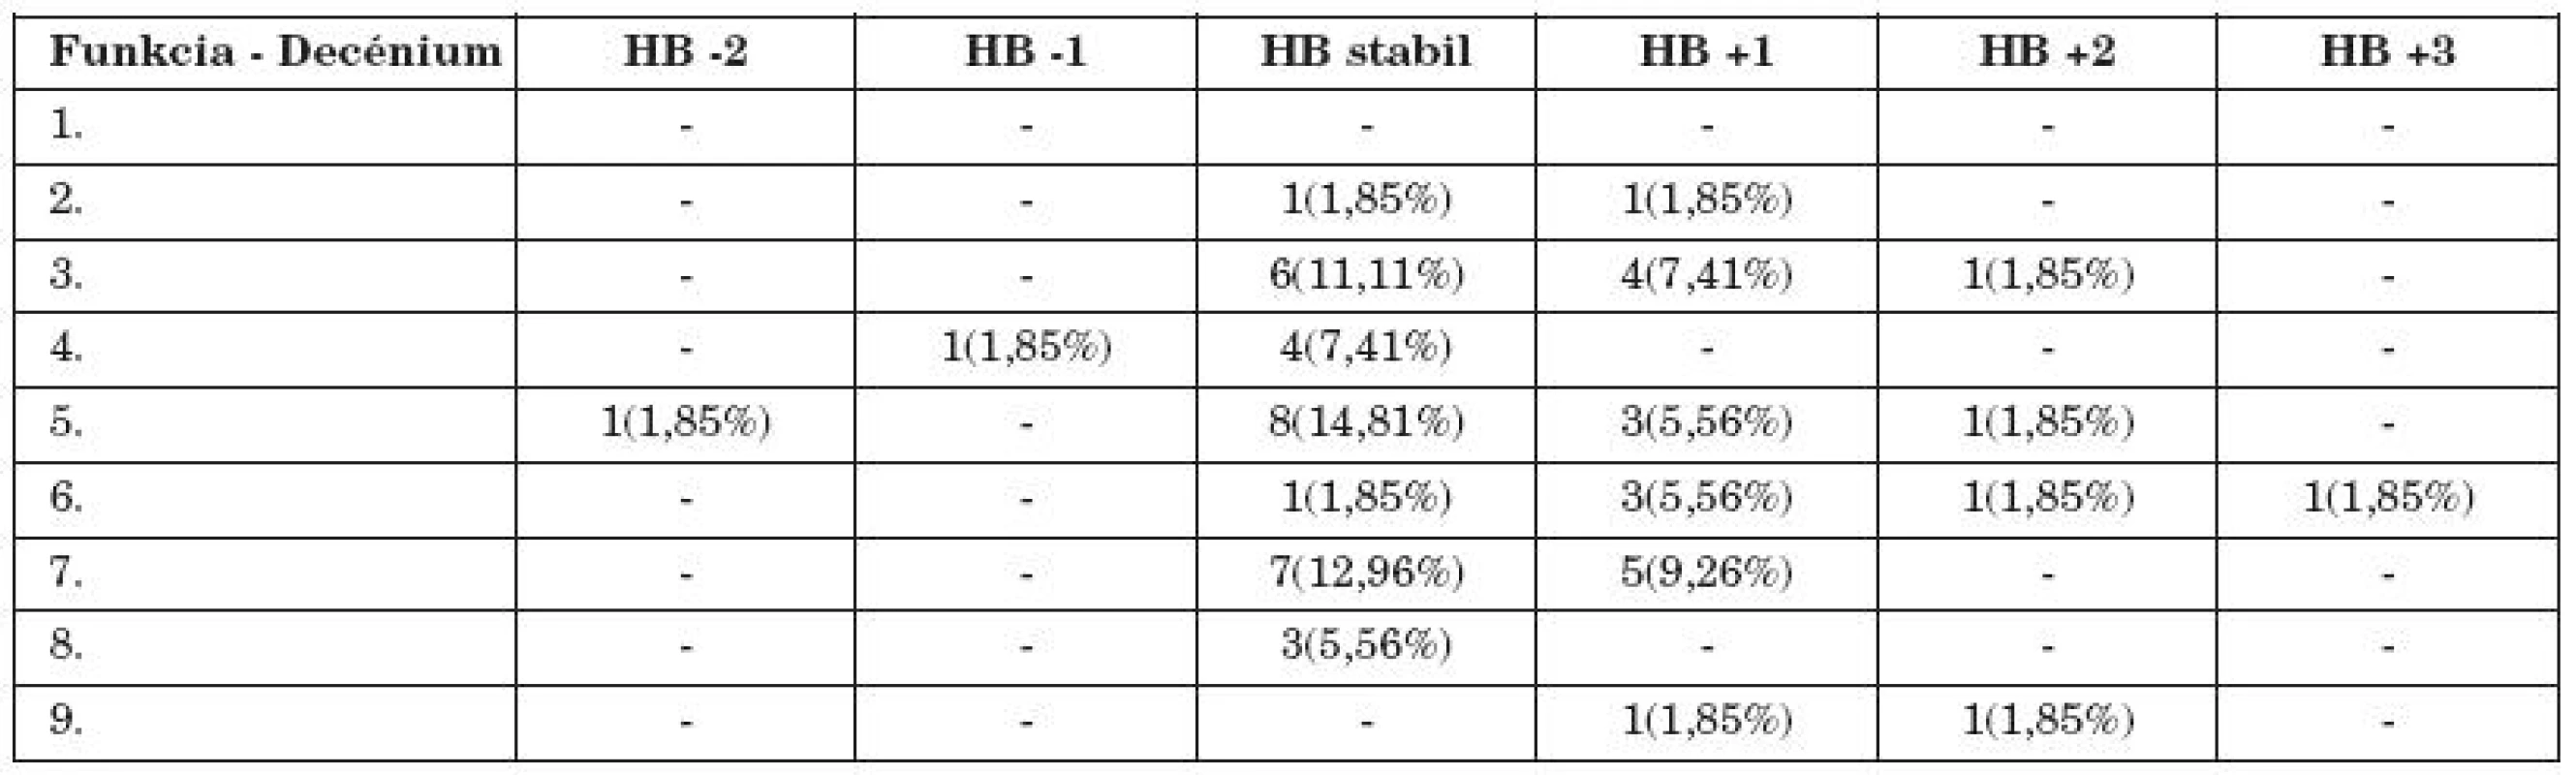 Zmena funkcie n. VII počas hospitalizácie v HB klasifikácii podľa decénií.